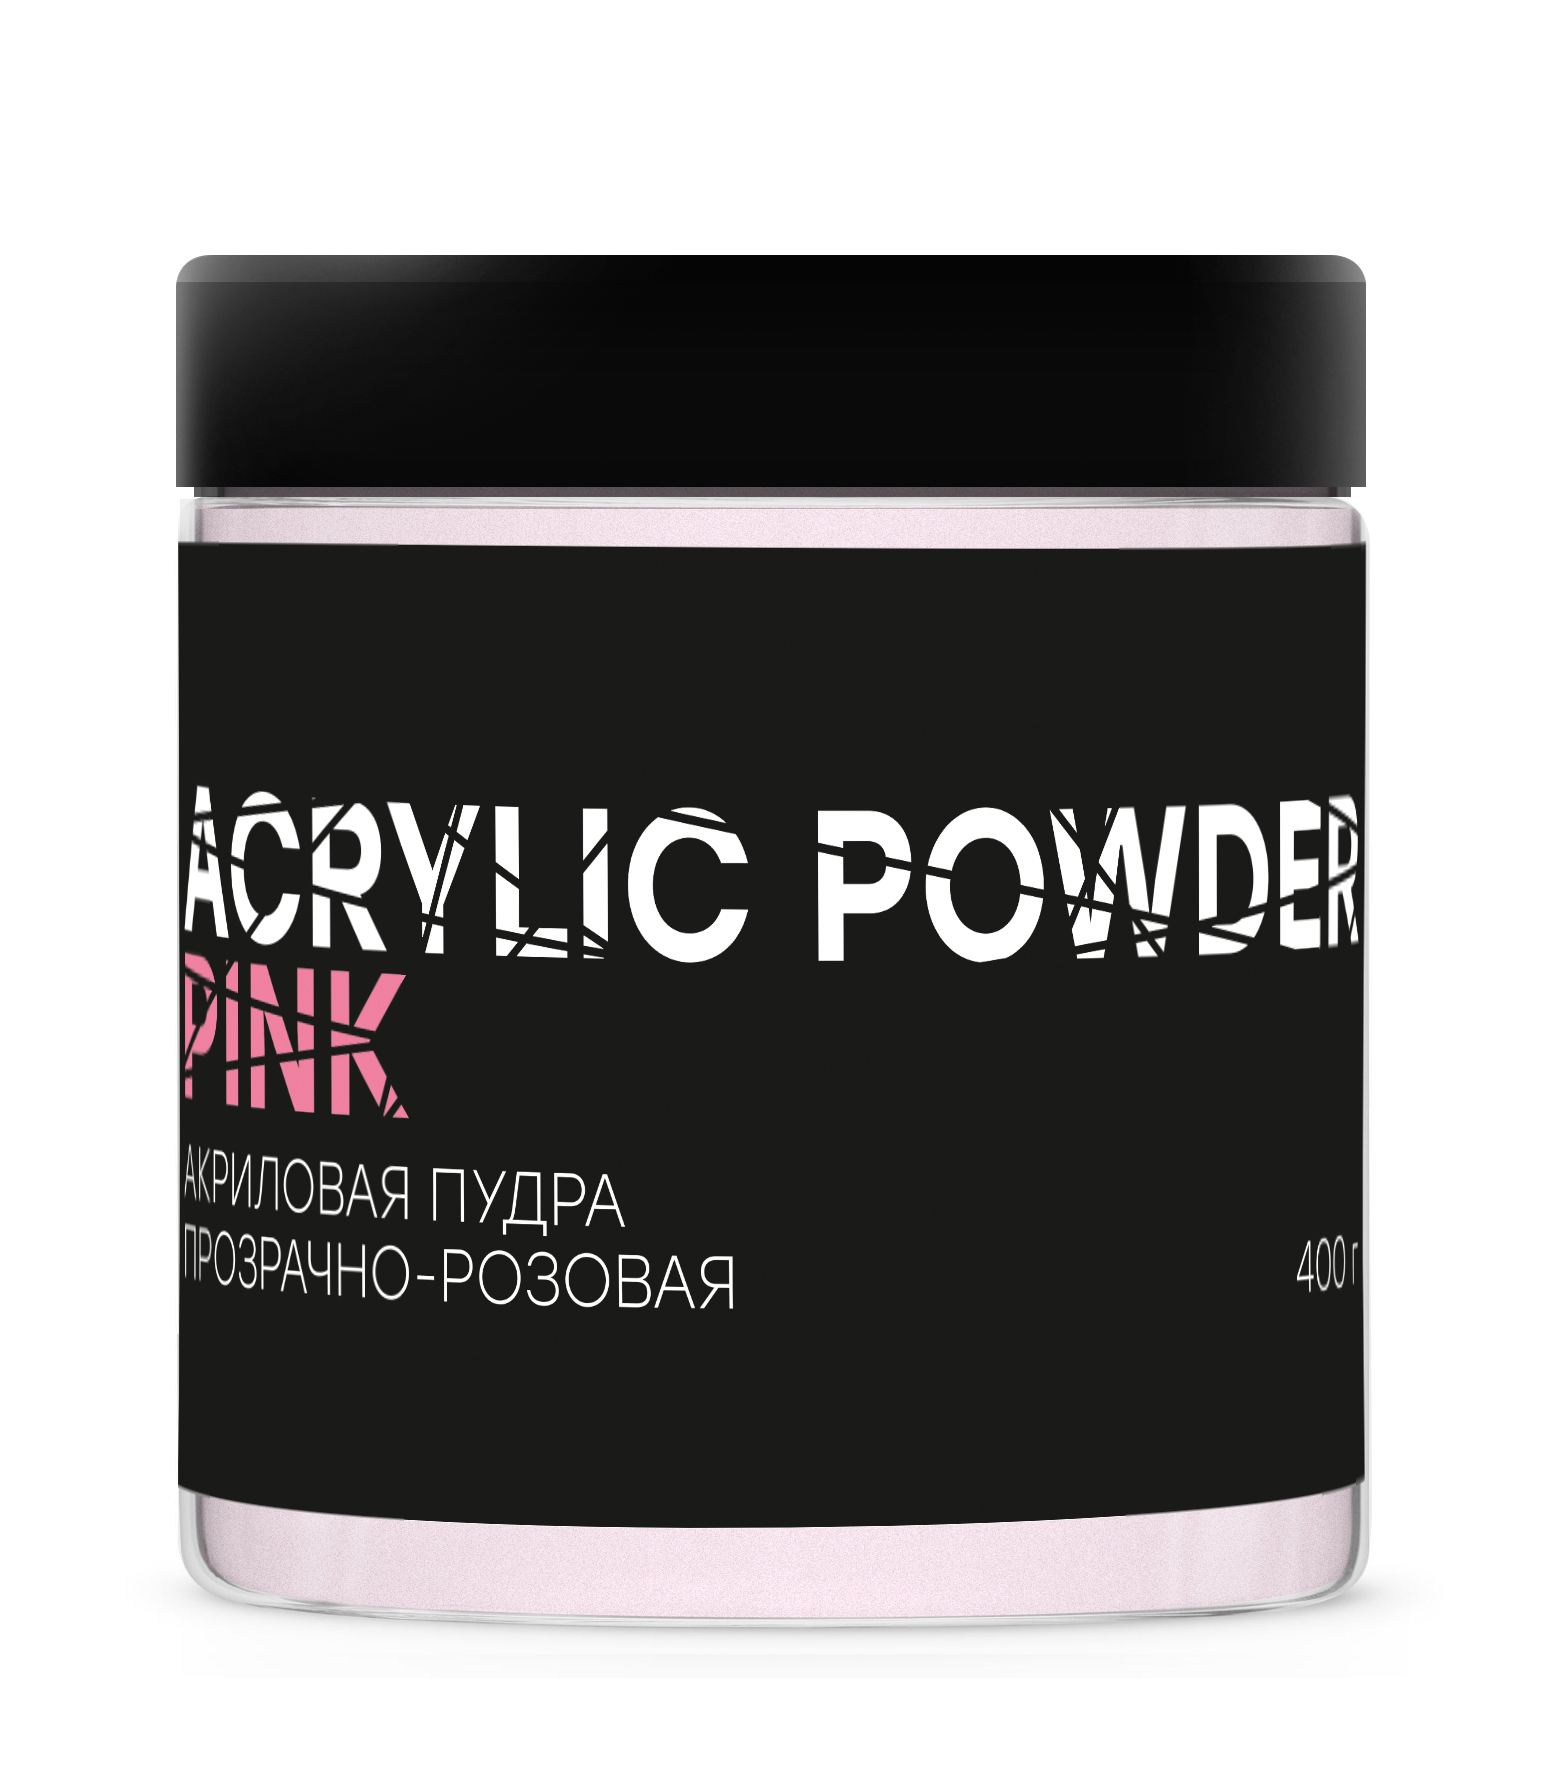 Акриловая пудра InGarden Acrylic Powder Pink прозрачно-розовая, 400 г акриловая пудра elpaza acrylic powder розовая 15 г